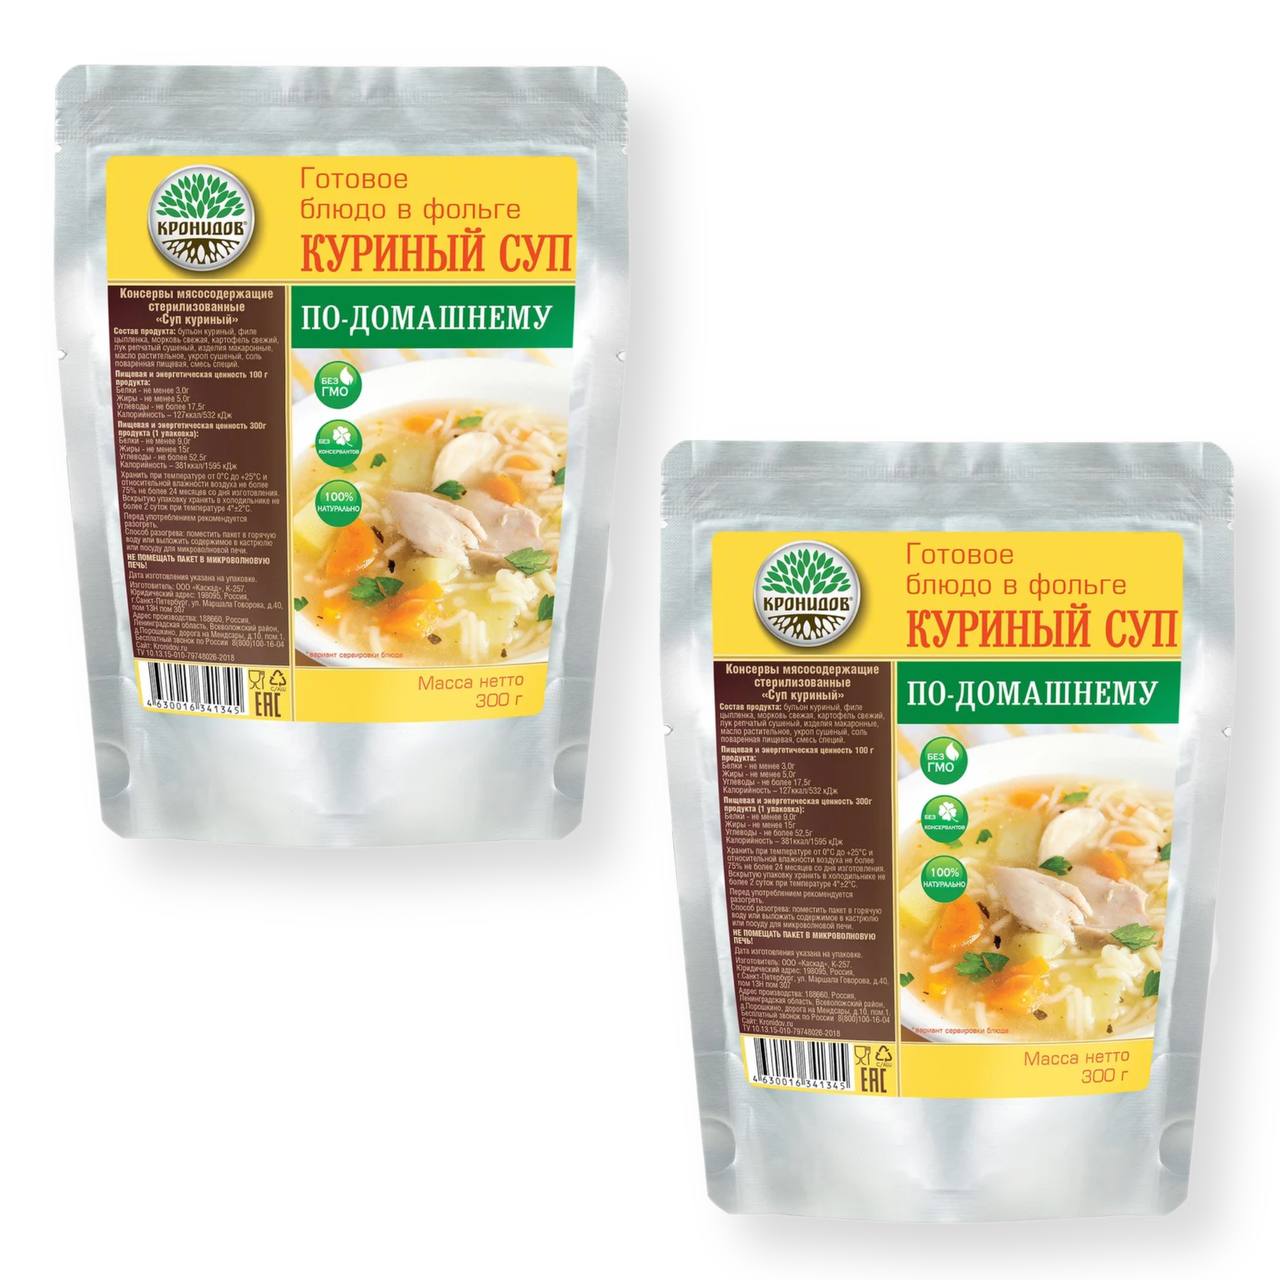 Готовое блюдо Кронидов куриный суп по-домашнему 300 г, 2 упаковки